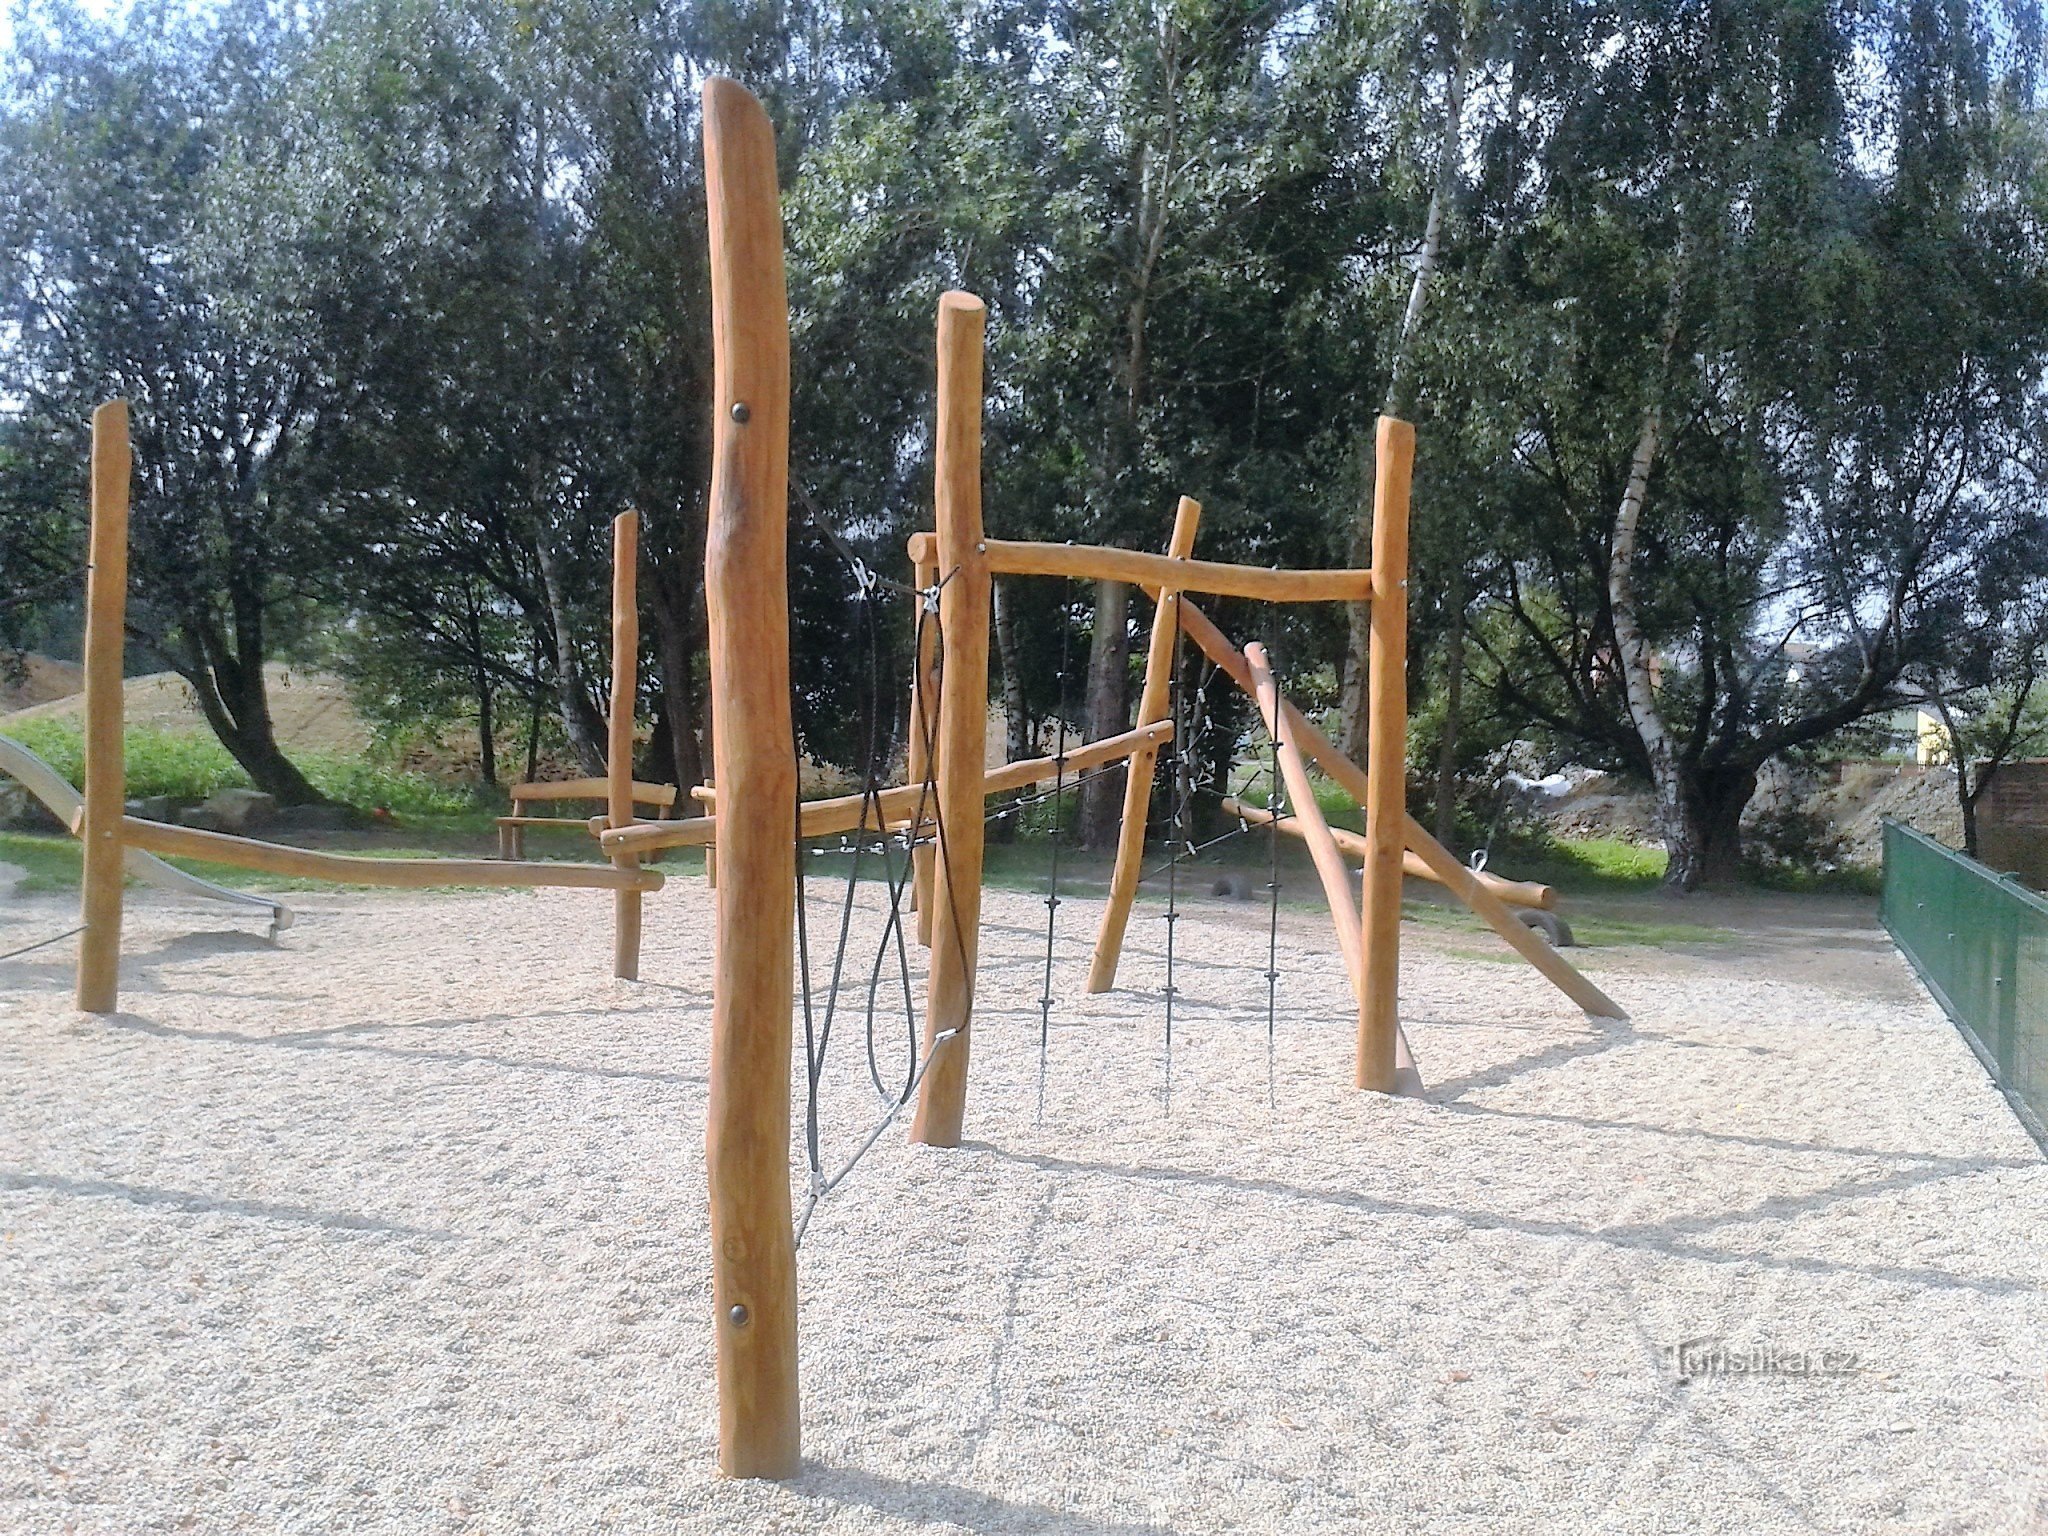 Zábřeh - Oborník legeplads (ny for alle kategorier af børn)